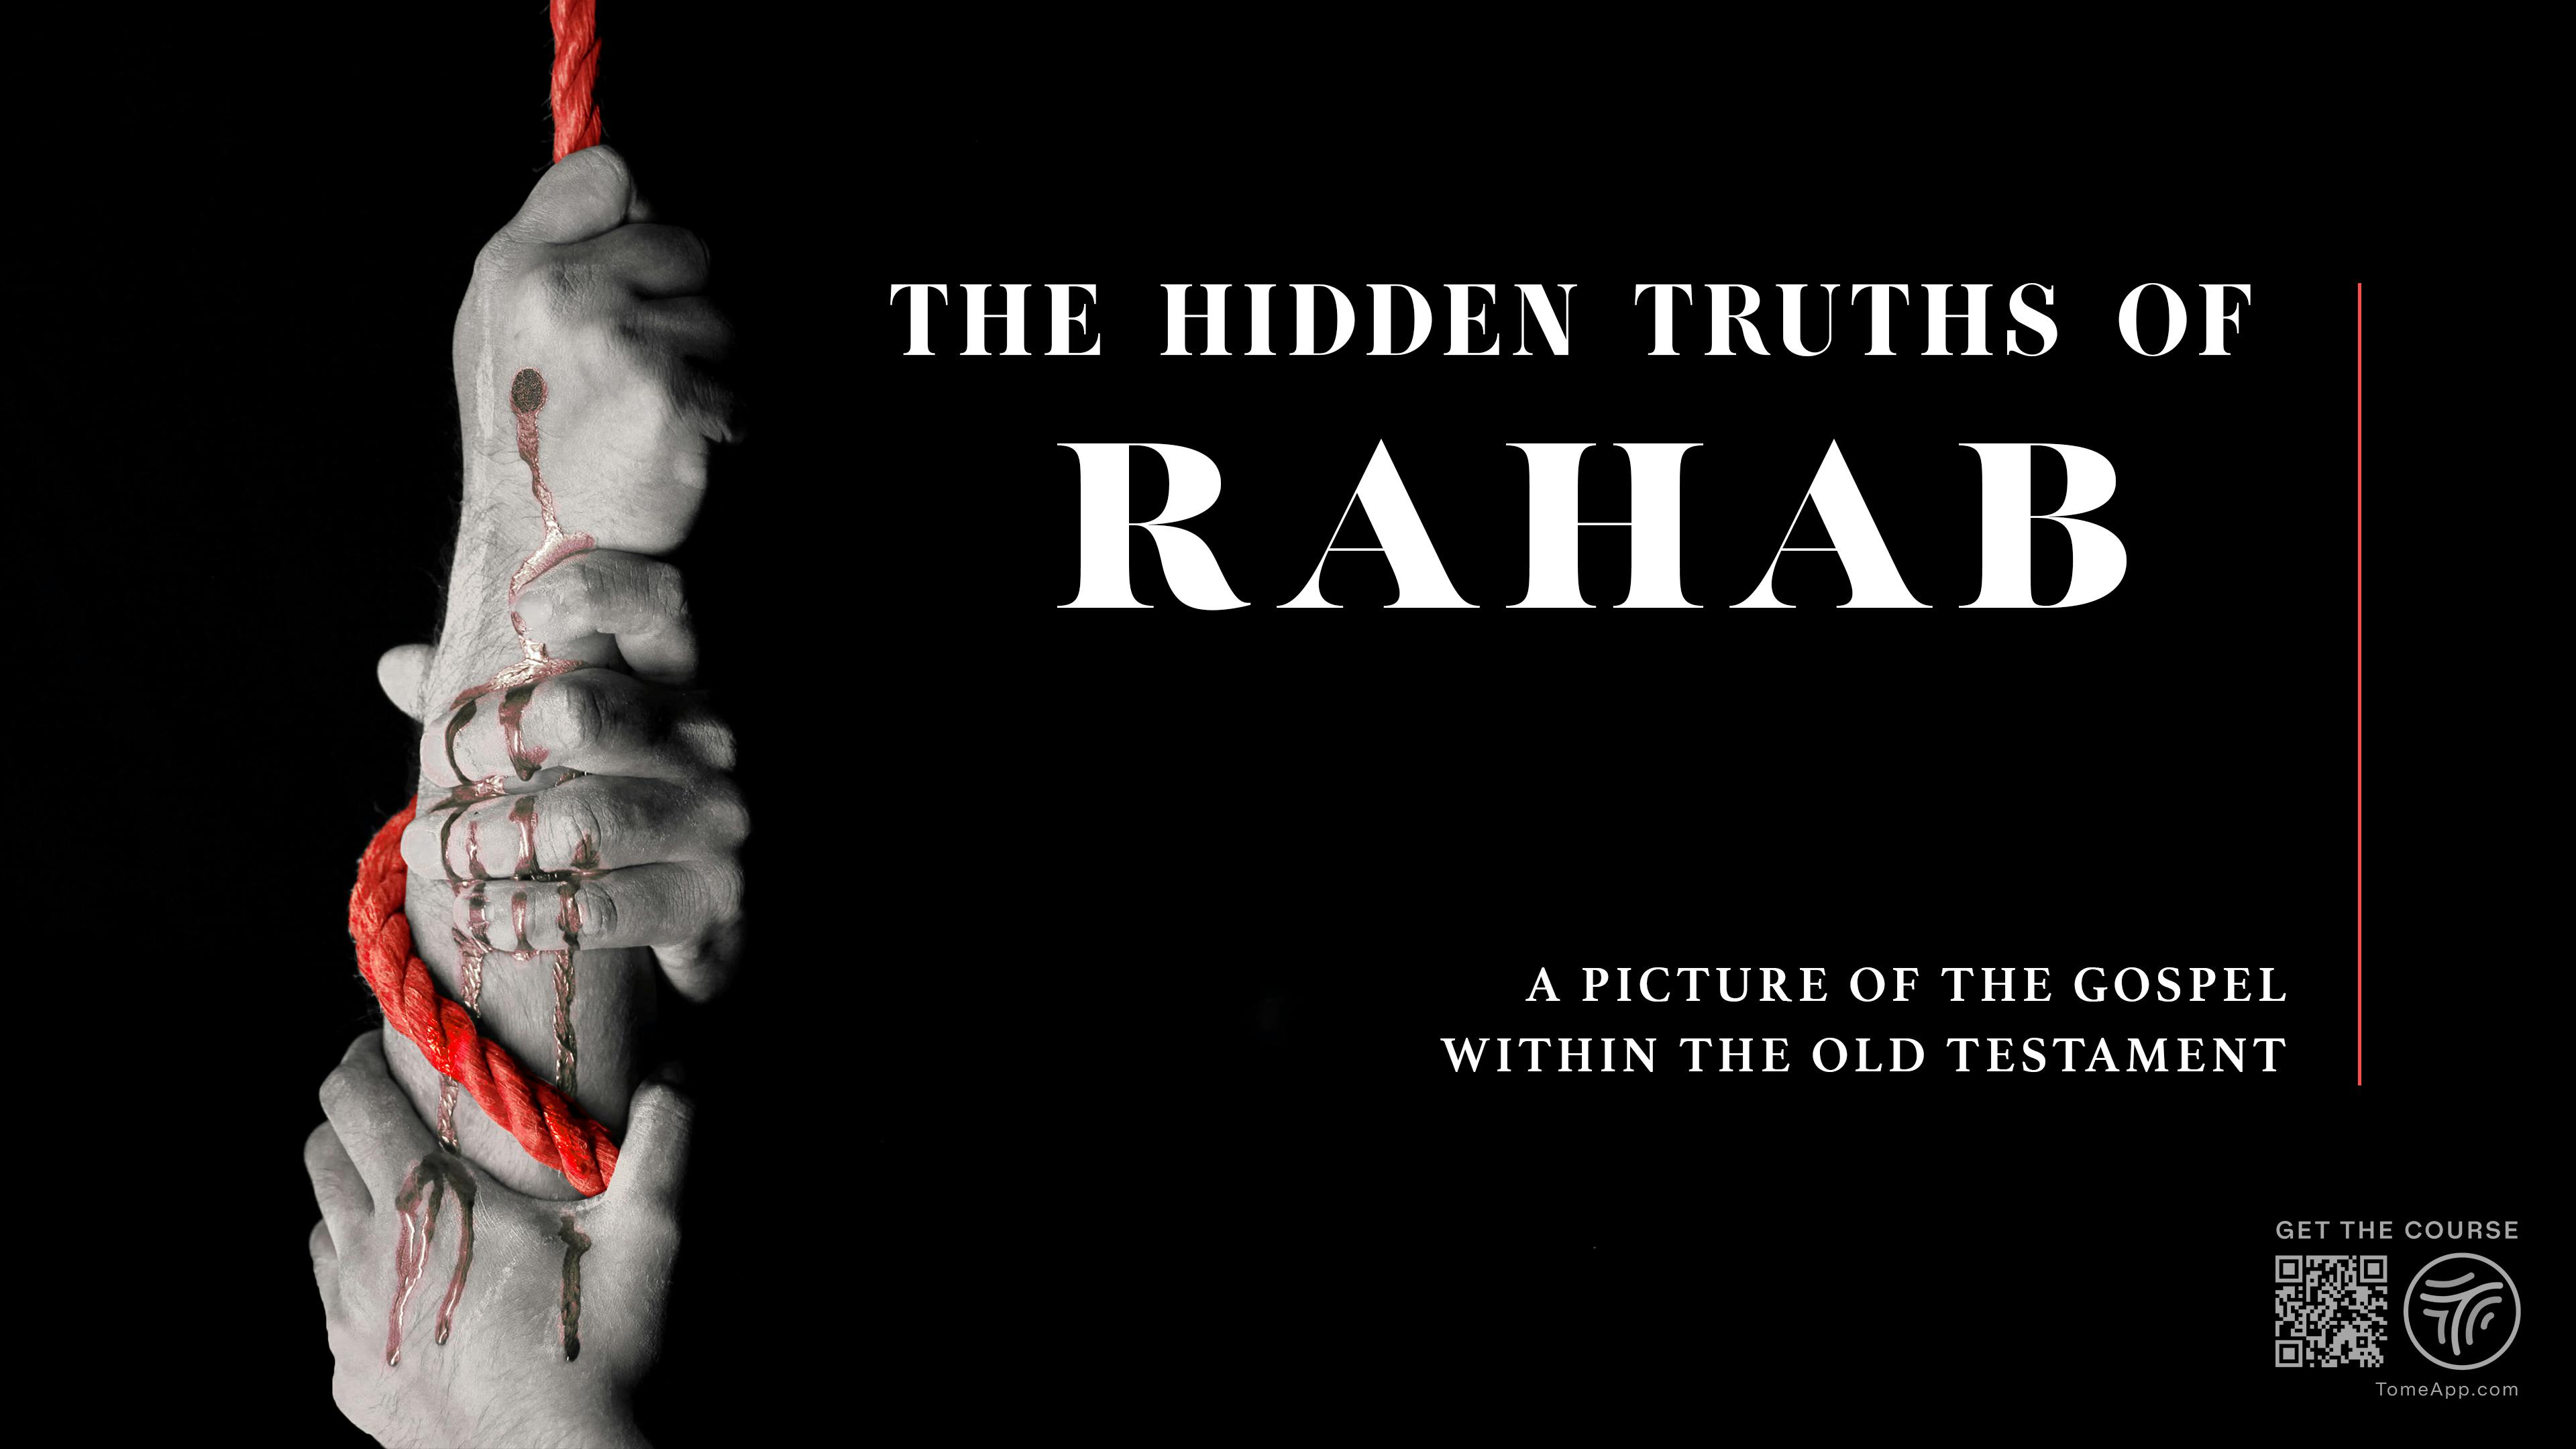 The Hidden Truths of Rahab